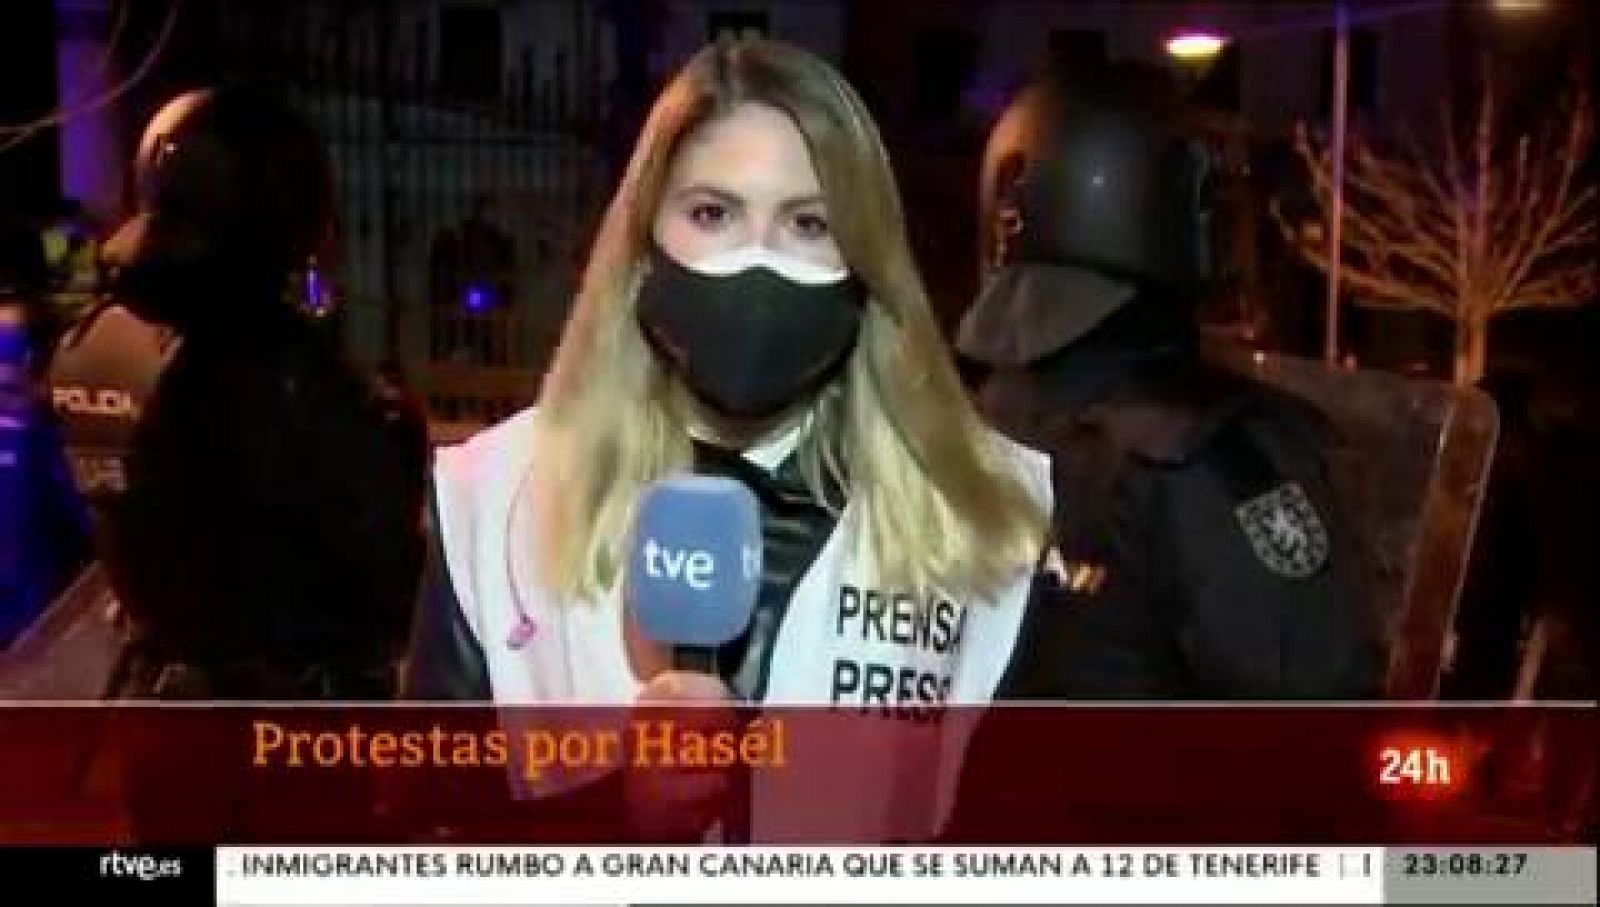 Protestas por Hasel en Madrid y Cataluña cuando se cumple un mes del encarcelamiento del rapero- RTVE.es